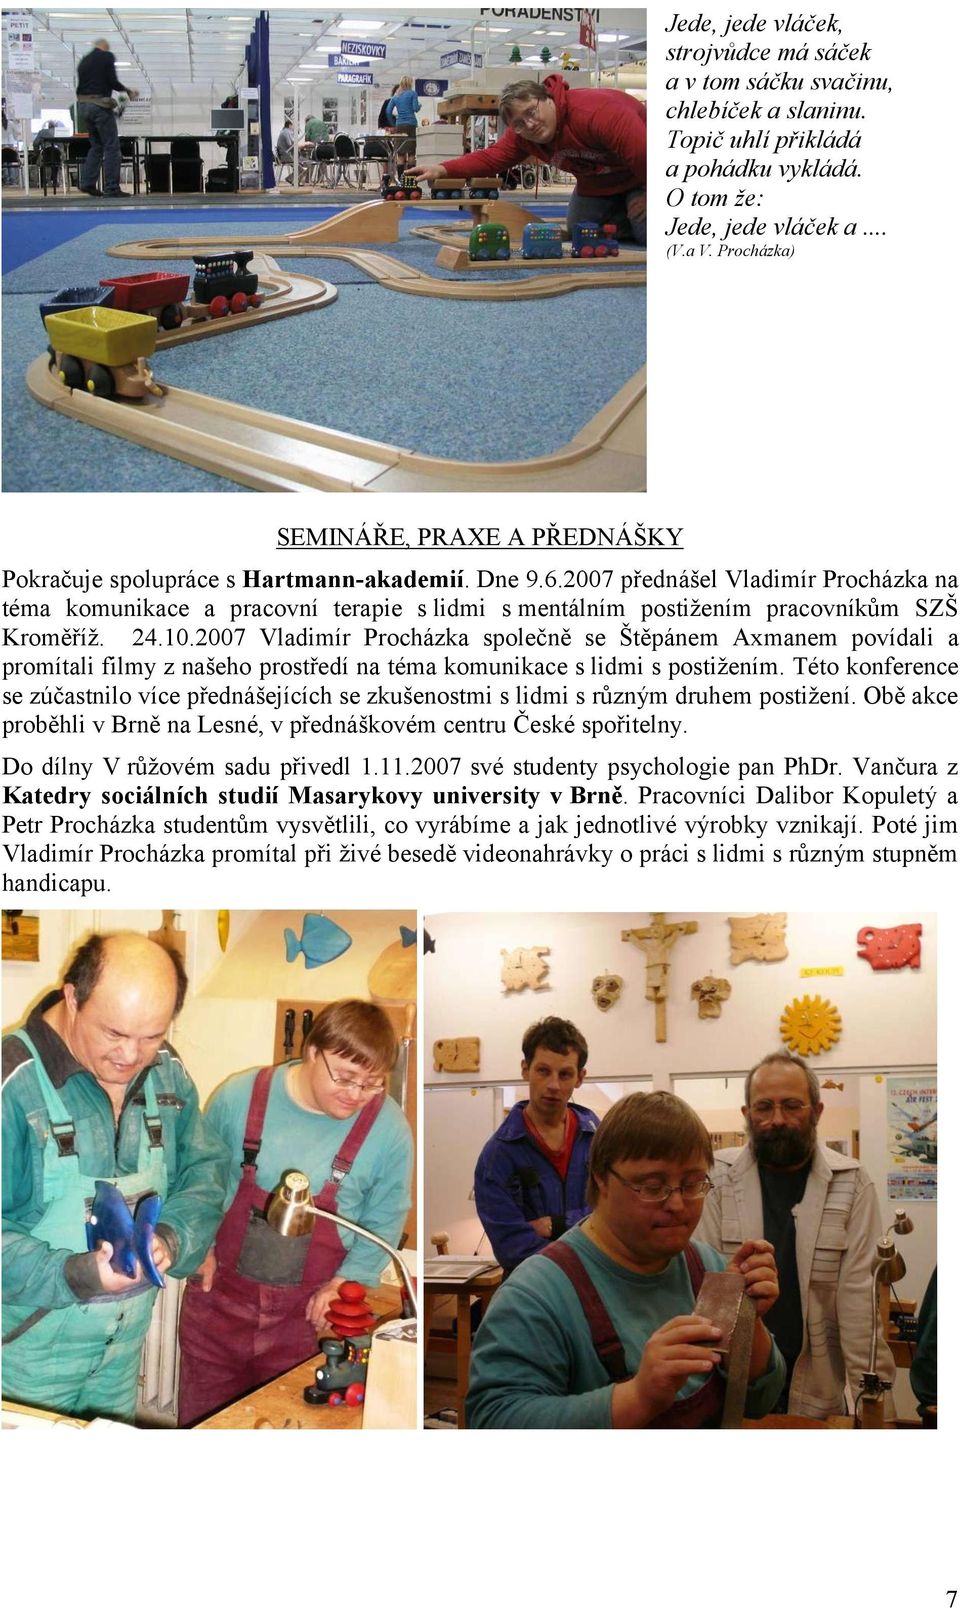 2007 přednášel Vladimír Procházka na téma komunikace a pracovní terapie s lidmi s mentálním postižením pracovníkům SZŠ Kroměříž. 24.10.